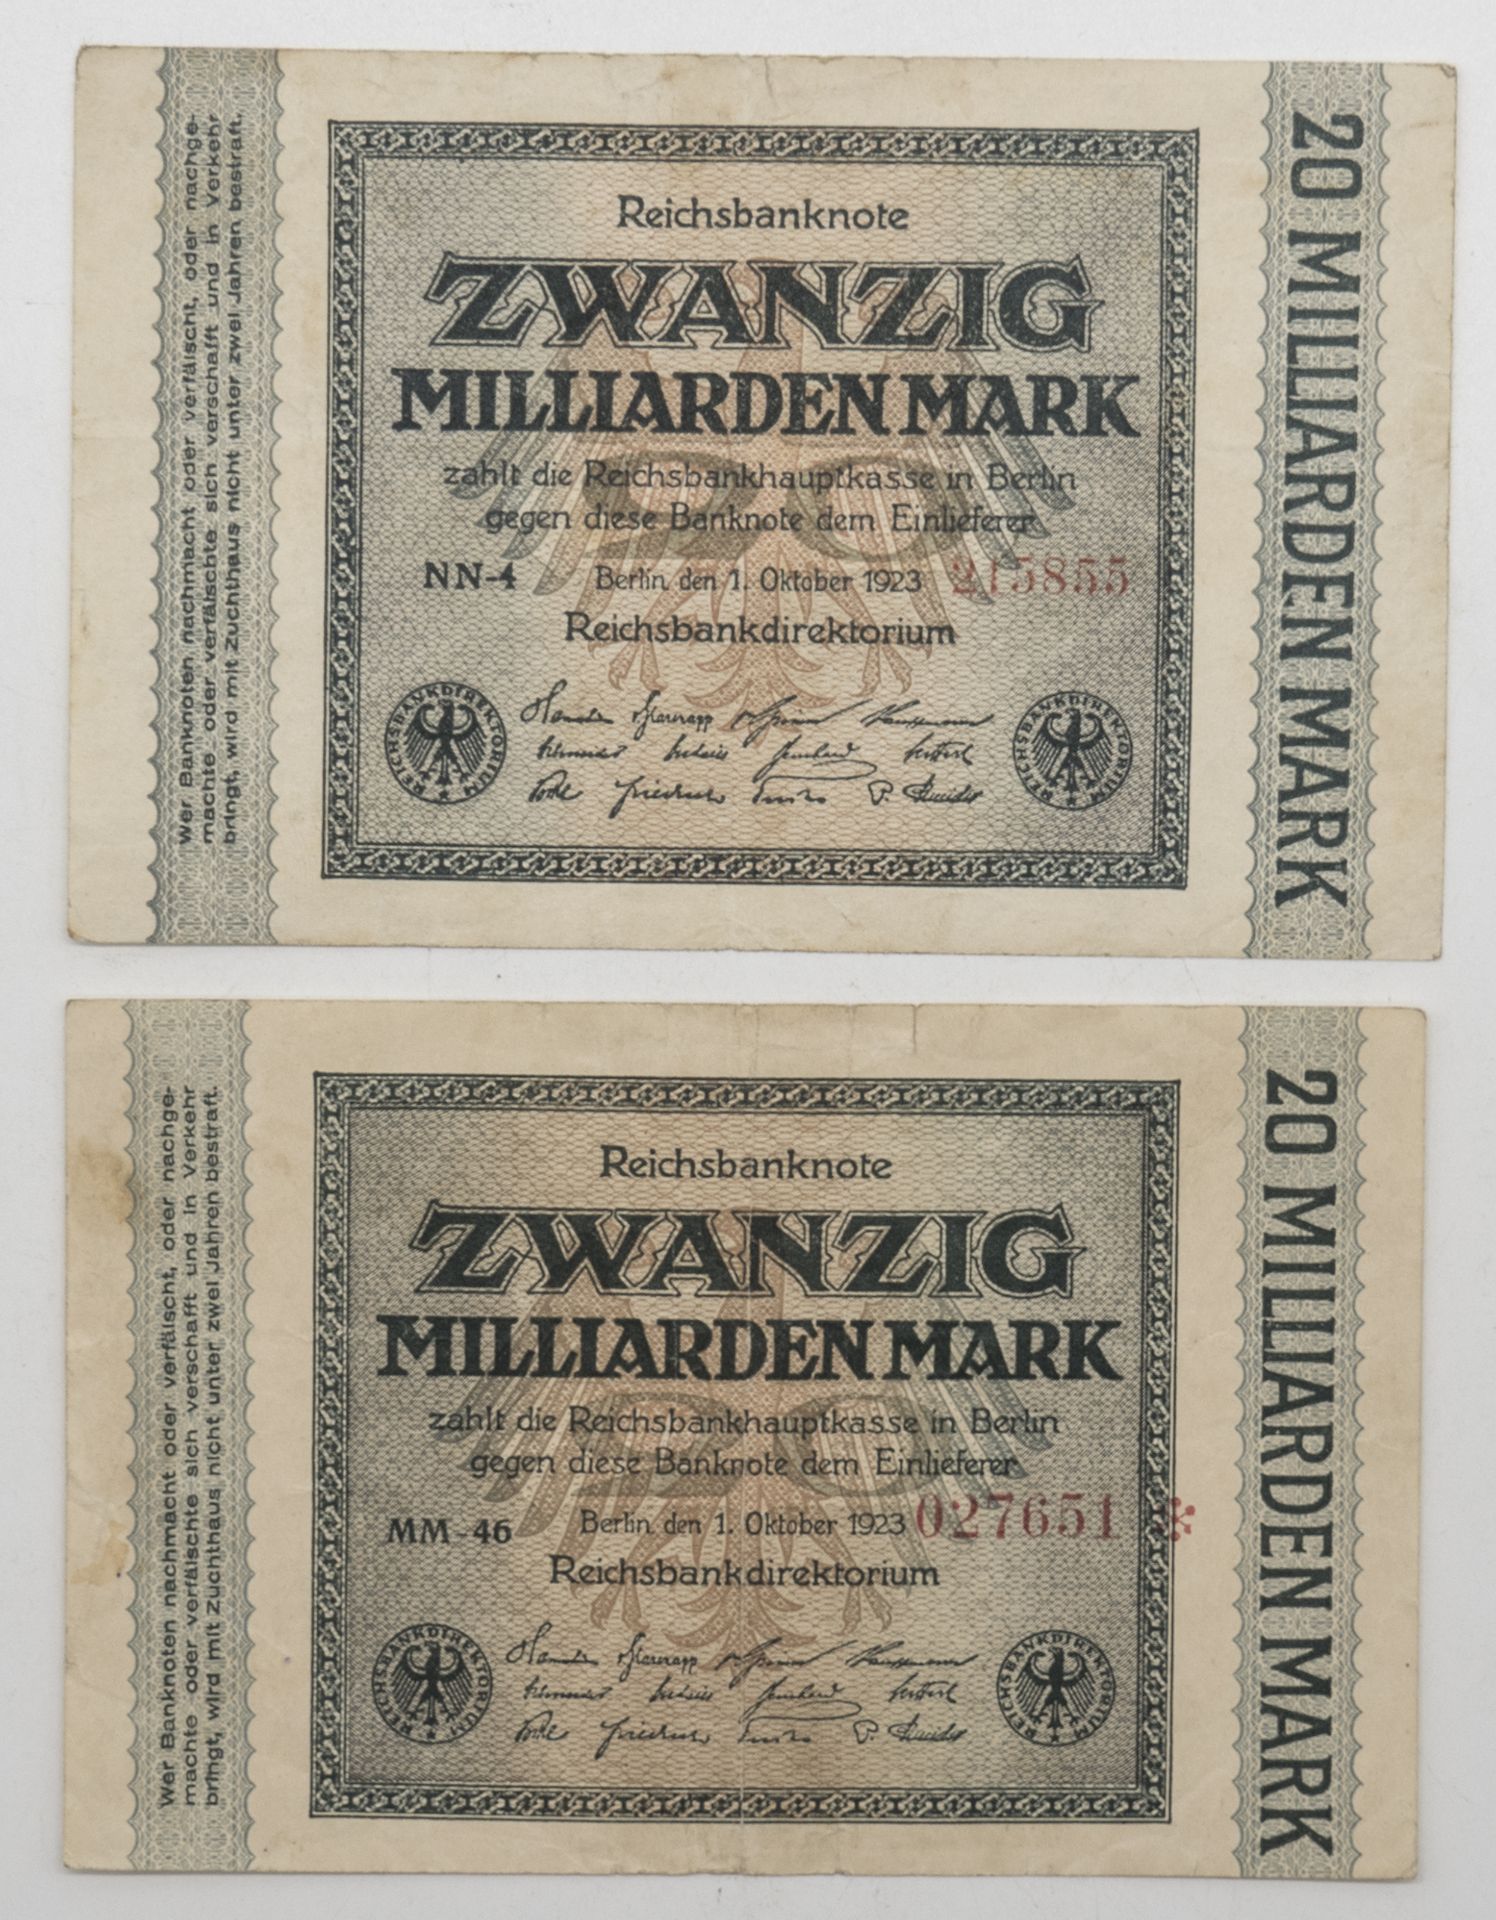 Deutsches Reich 1923, 2 x 20 Milliarden Mark - Banknoten. Erhaltung: ss.